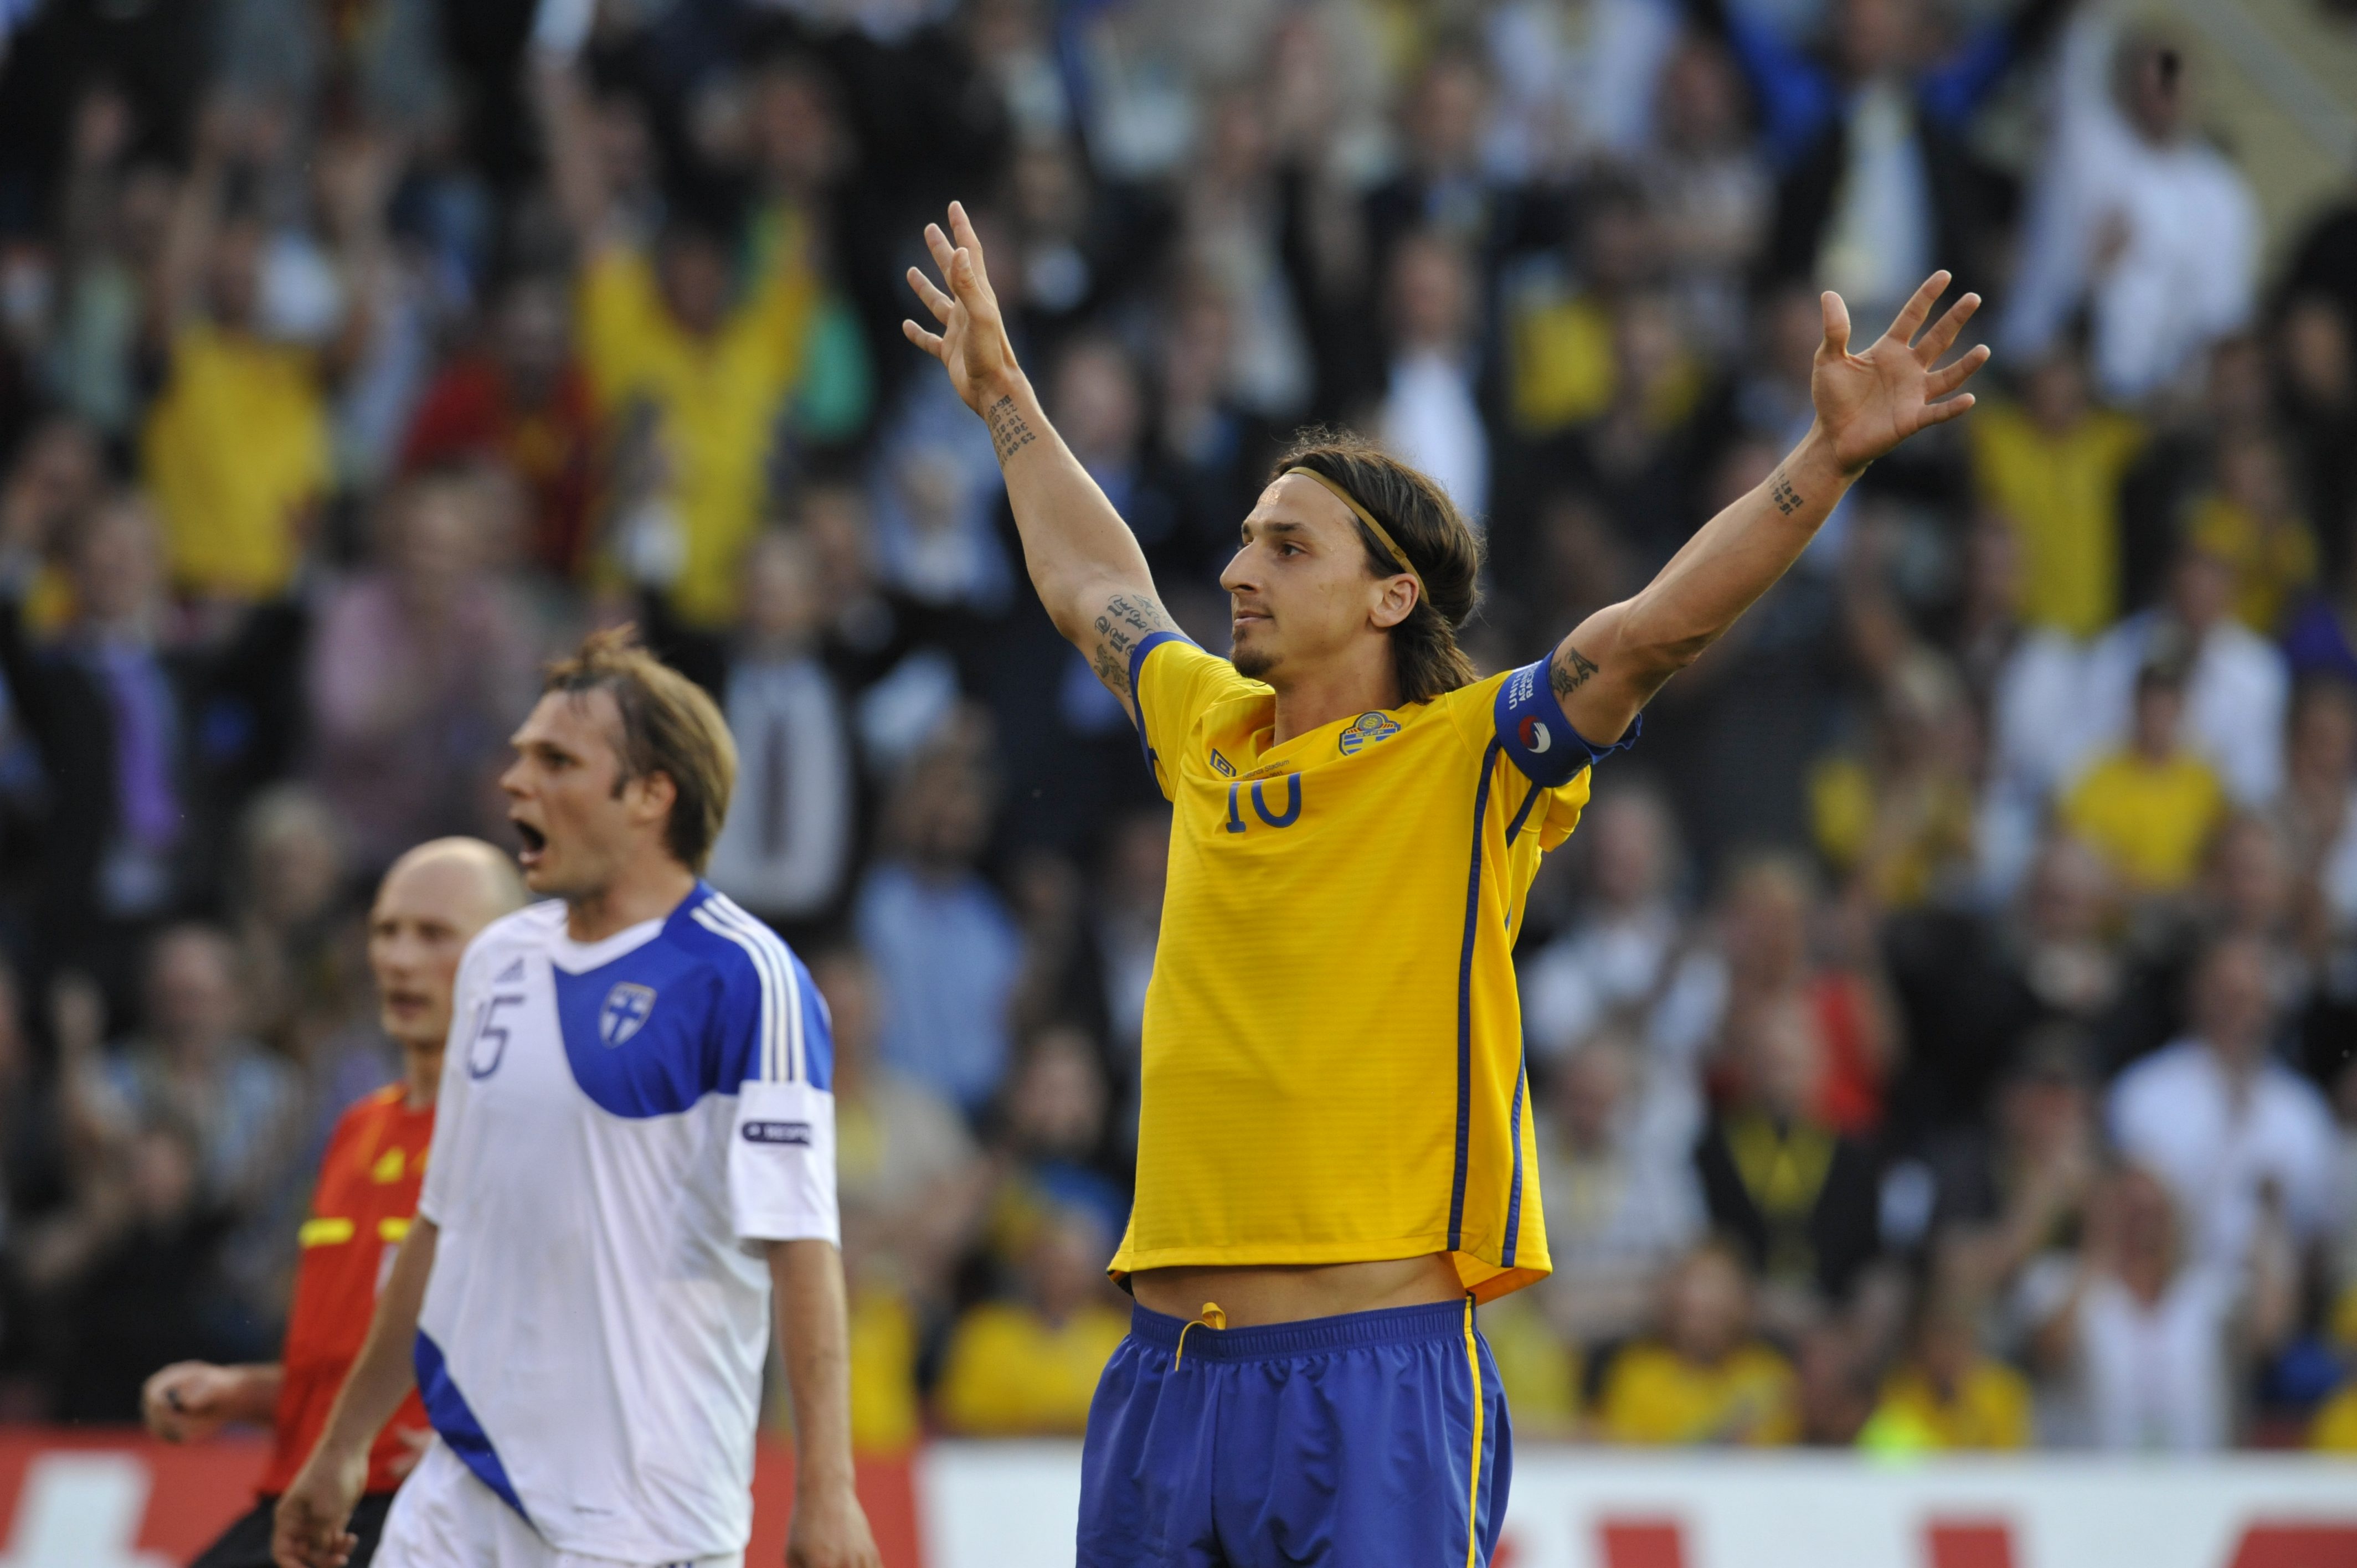 Vid matchstart var han bänkad. Efter 60 minuter hade Zlatan ändå gjort ett hattrick. Så går det när man sätter en superstjärna på bänken. Sverige vann till slut med 5-0 sedan Toivonen inlett målskyttet och Bajrami avslutat den. 